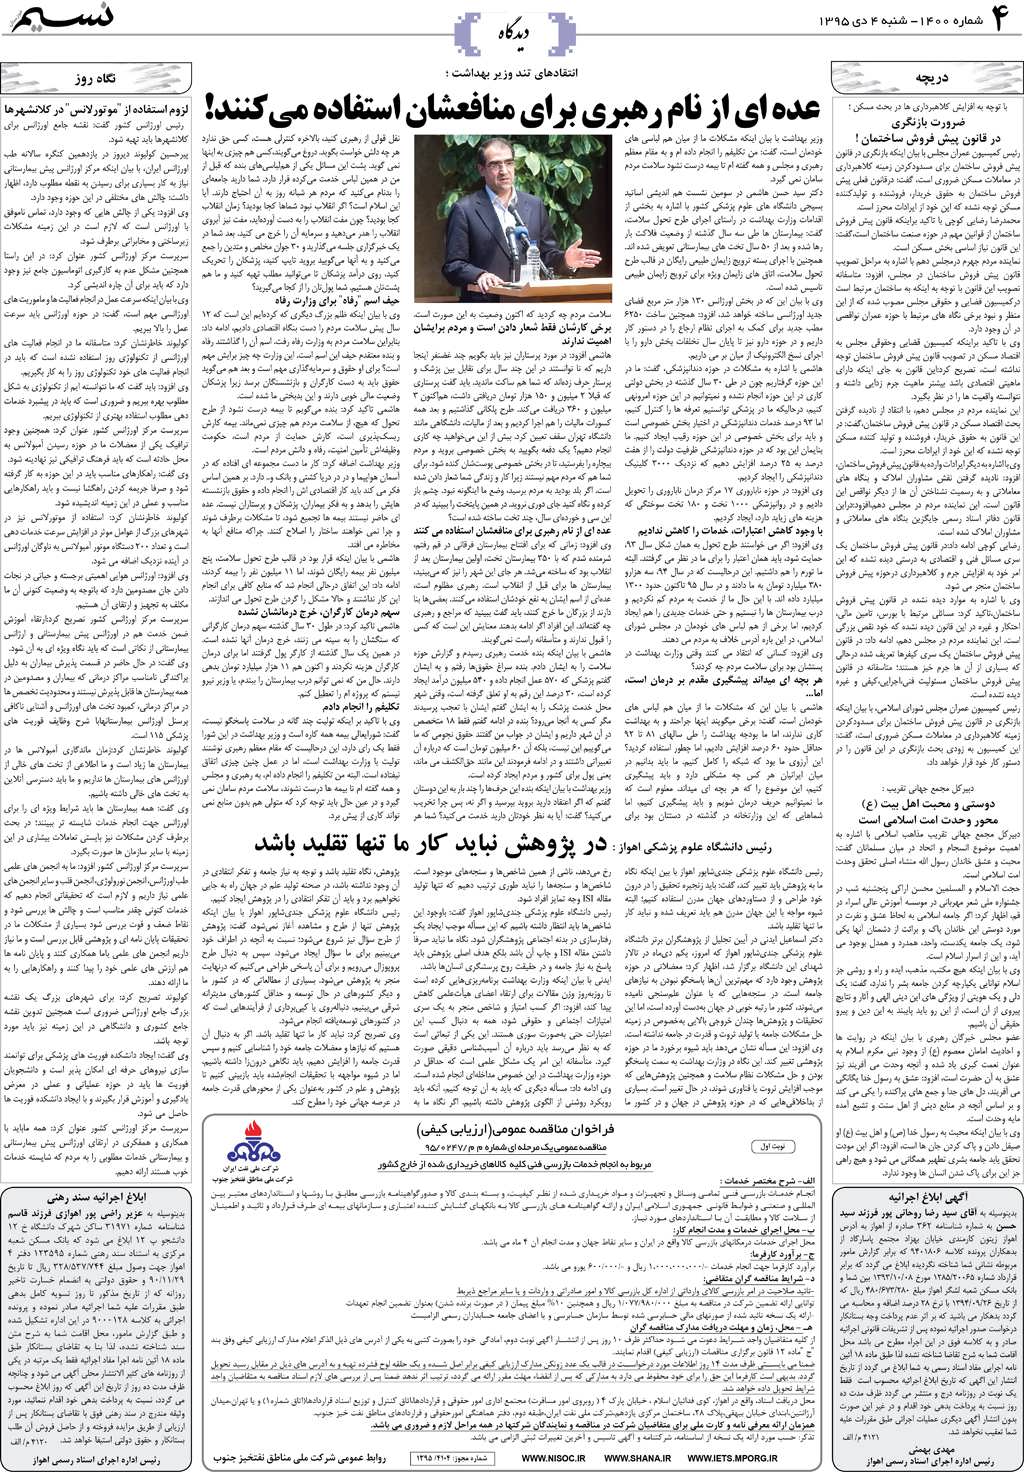 صفحه دیدگاه روزنامه نسیم شماره 1400